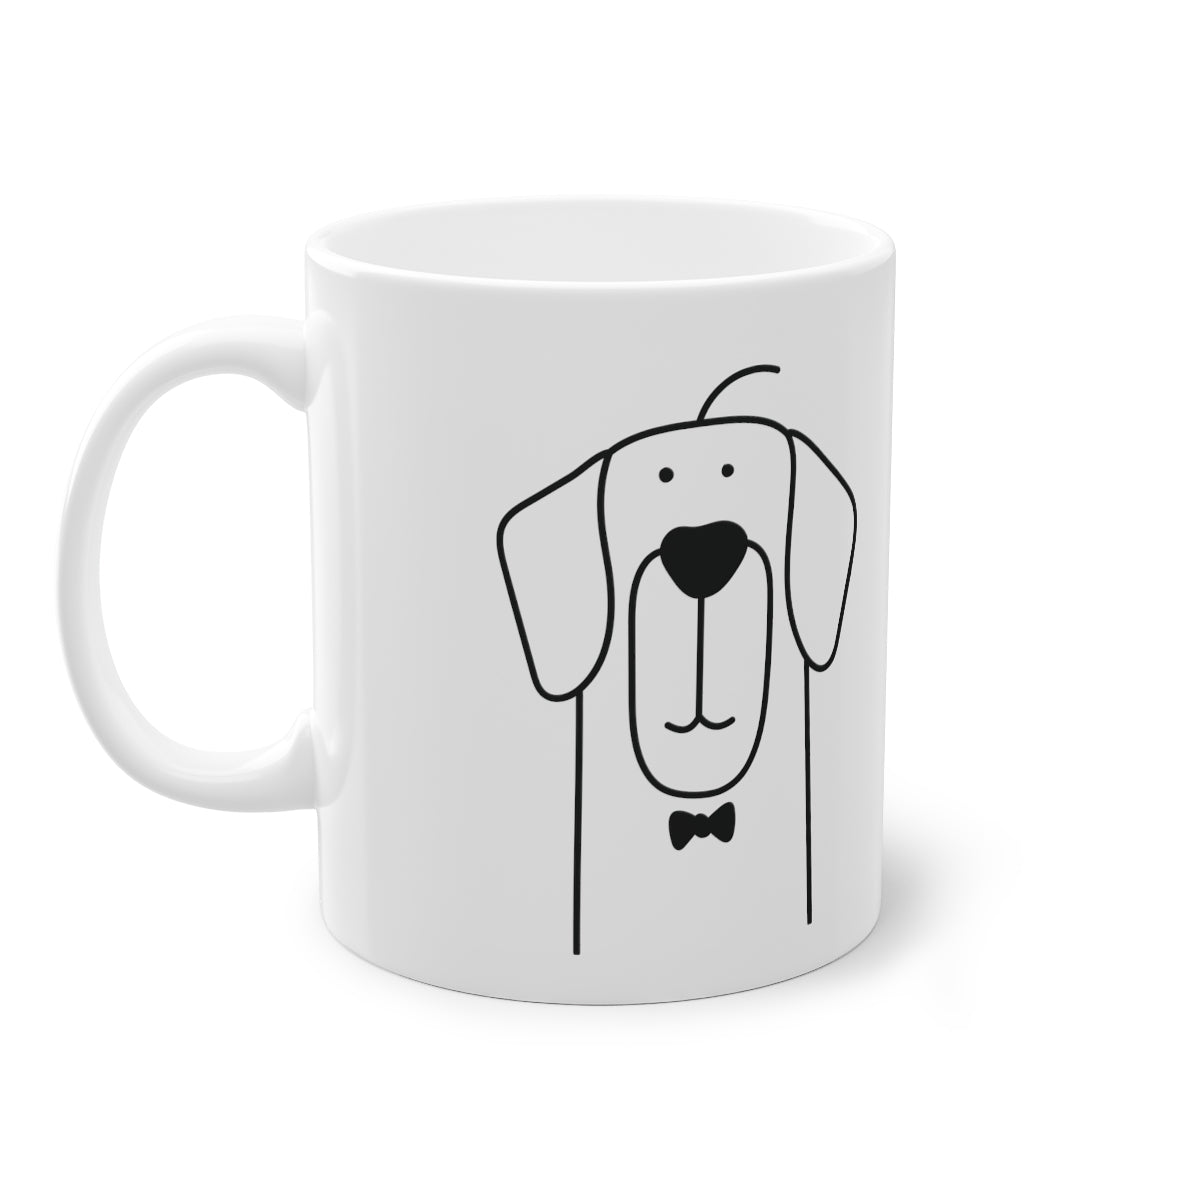 Niedlicher Hund Retriever Becher, weiß, 325 ml / 11 oz Kaffeebecher, Teebecher für Kinder, Kinder, Welpenbecher für Hundeliebhaber, Hundebesitzer